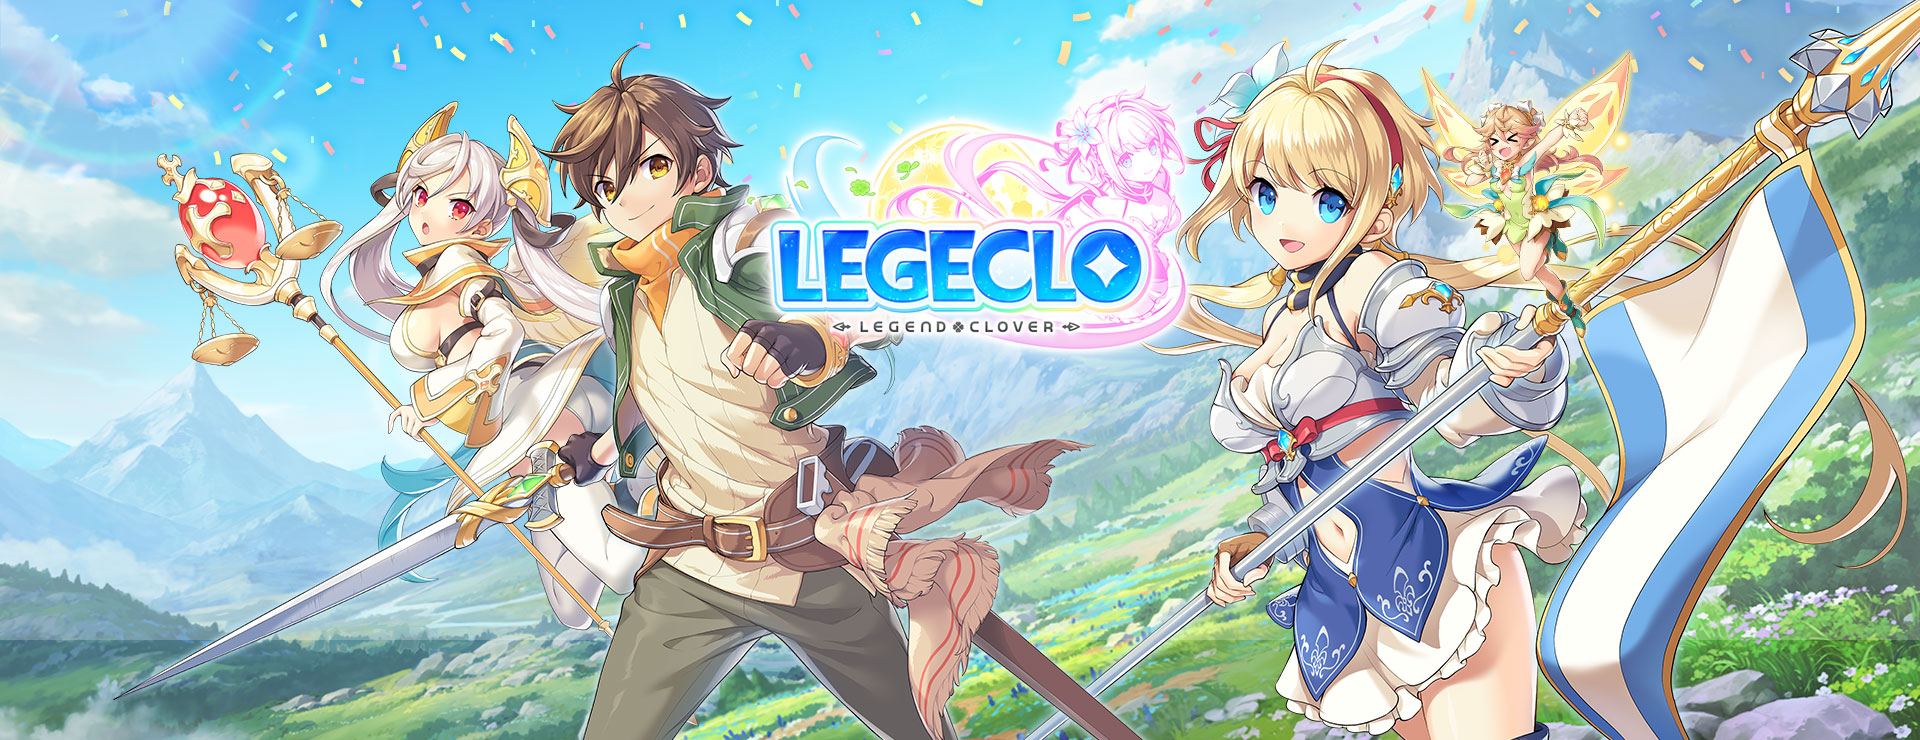 Legeclo: Legend Clover - Turówka RPG Gra